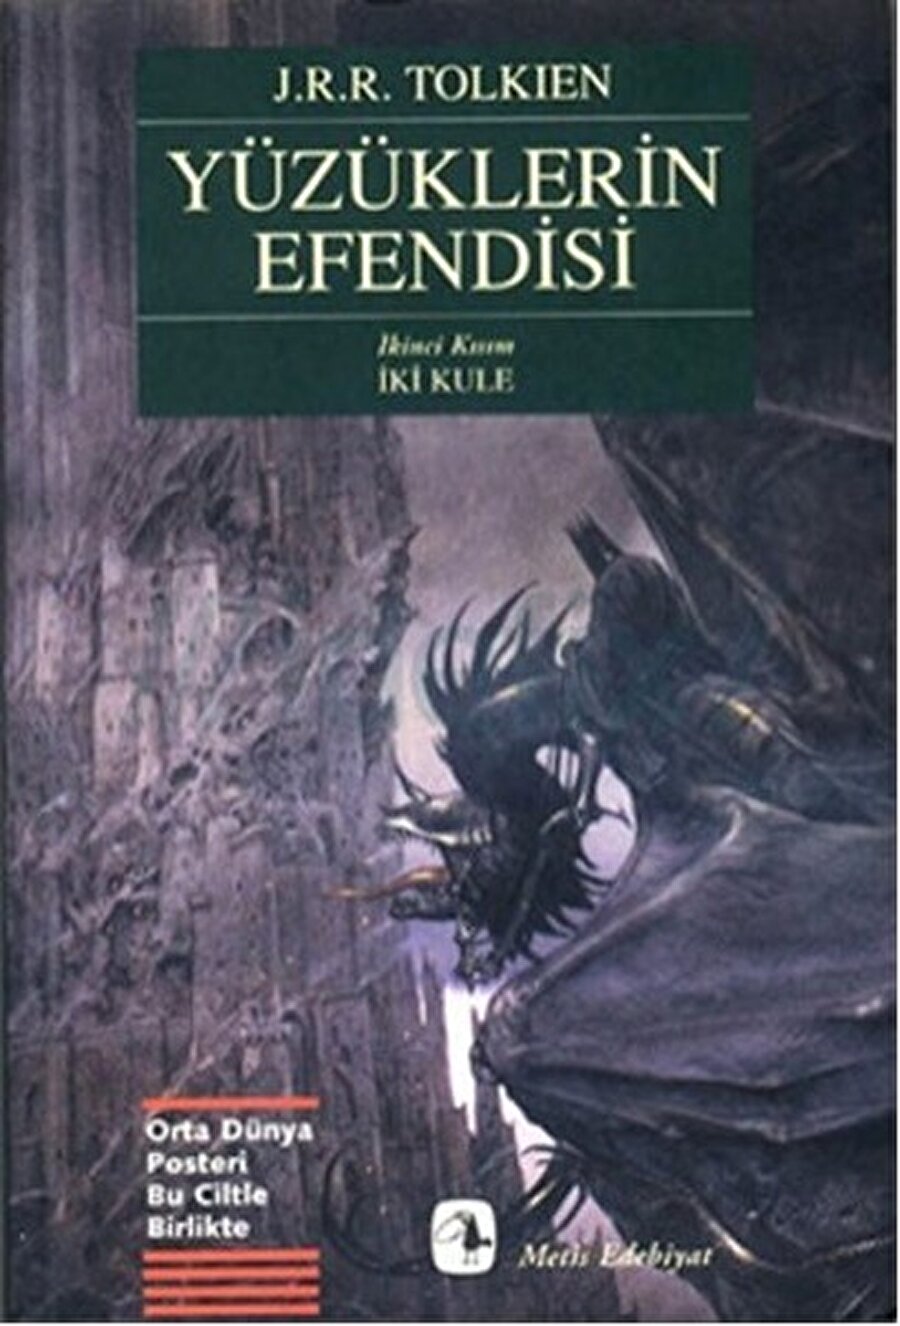 Yüzüklerin Efendisi: İki Kule

                                    
                                    Tüm dünyayı etkisi altına alan Tolkien'in Yüzüklerin Efendisi serisinin ikinci kitabıdır. 1954 yılında yayınlanan bu kitap tam 150 milyon adet satmıştır.

                                
                                